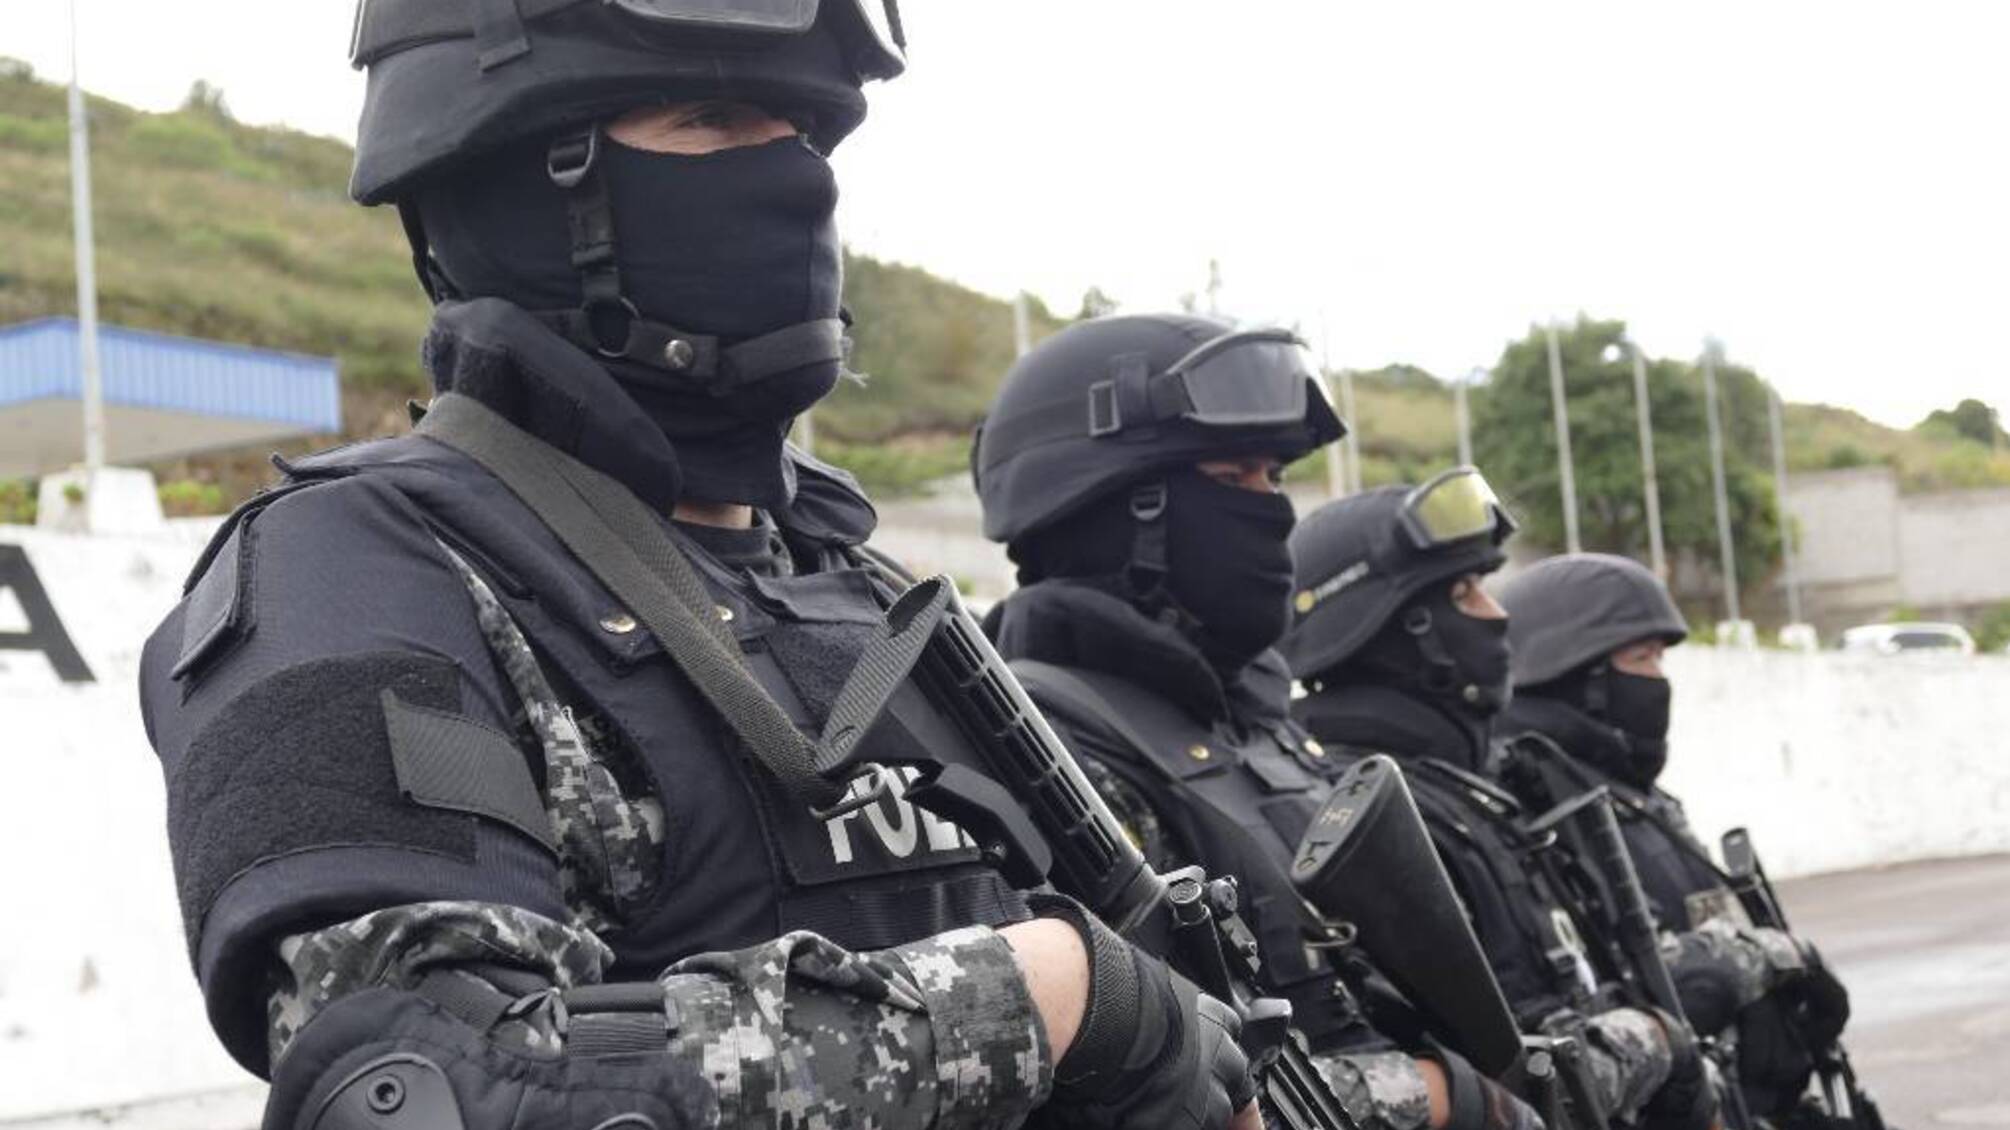 Після захоплення телетрансляції в Еквадорі оголосили “внутрішній збройний конфлікт”